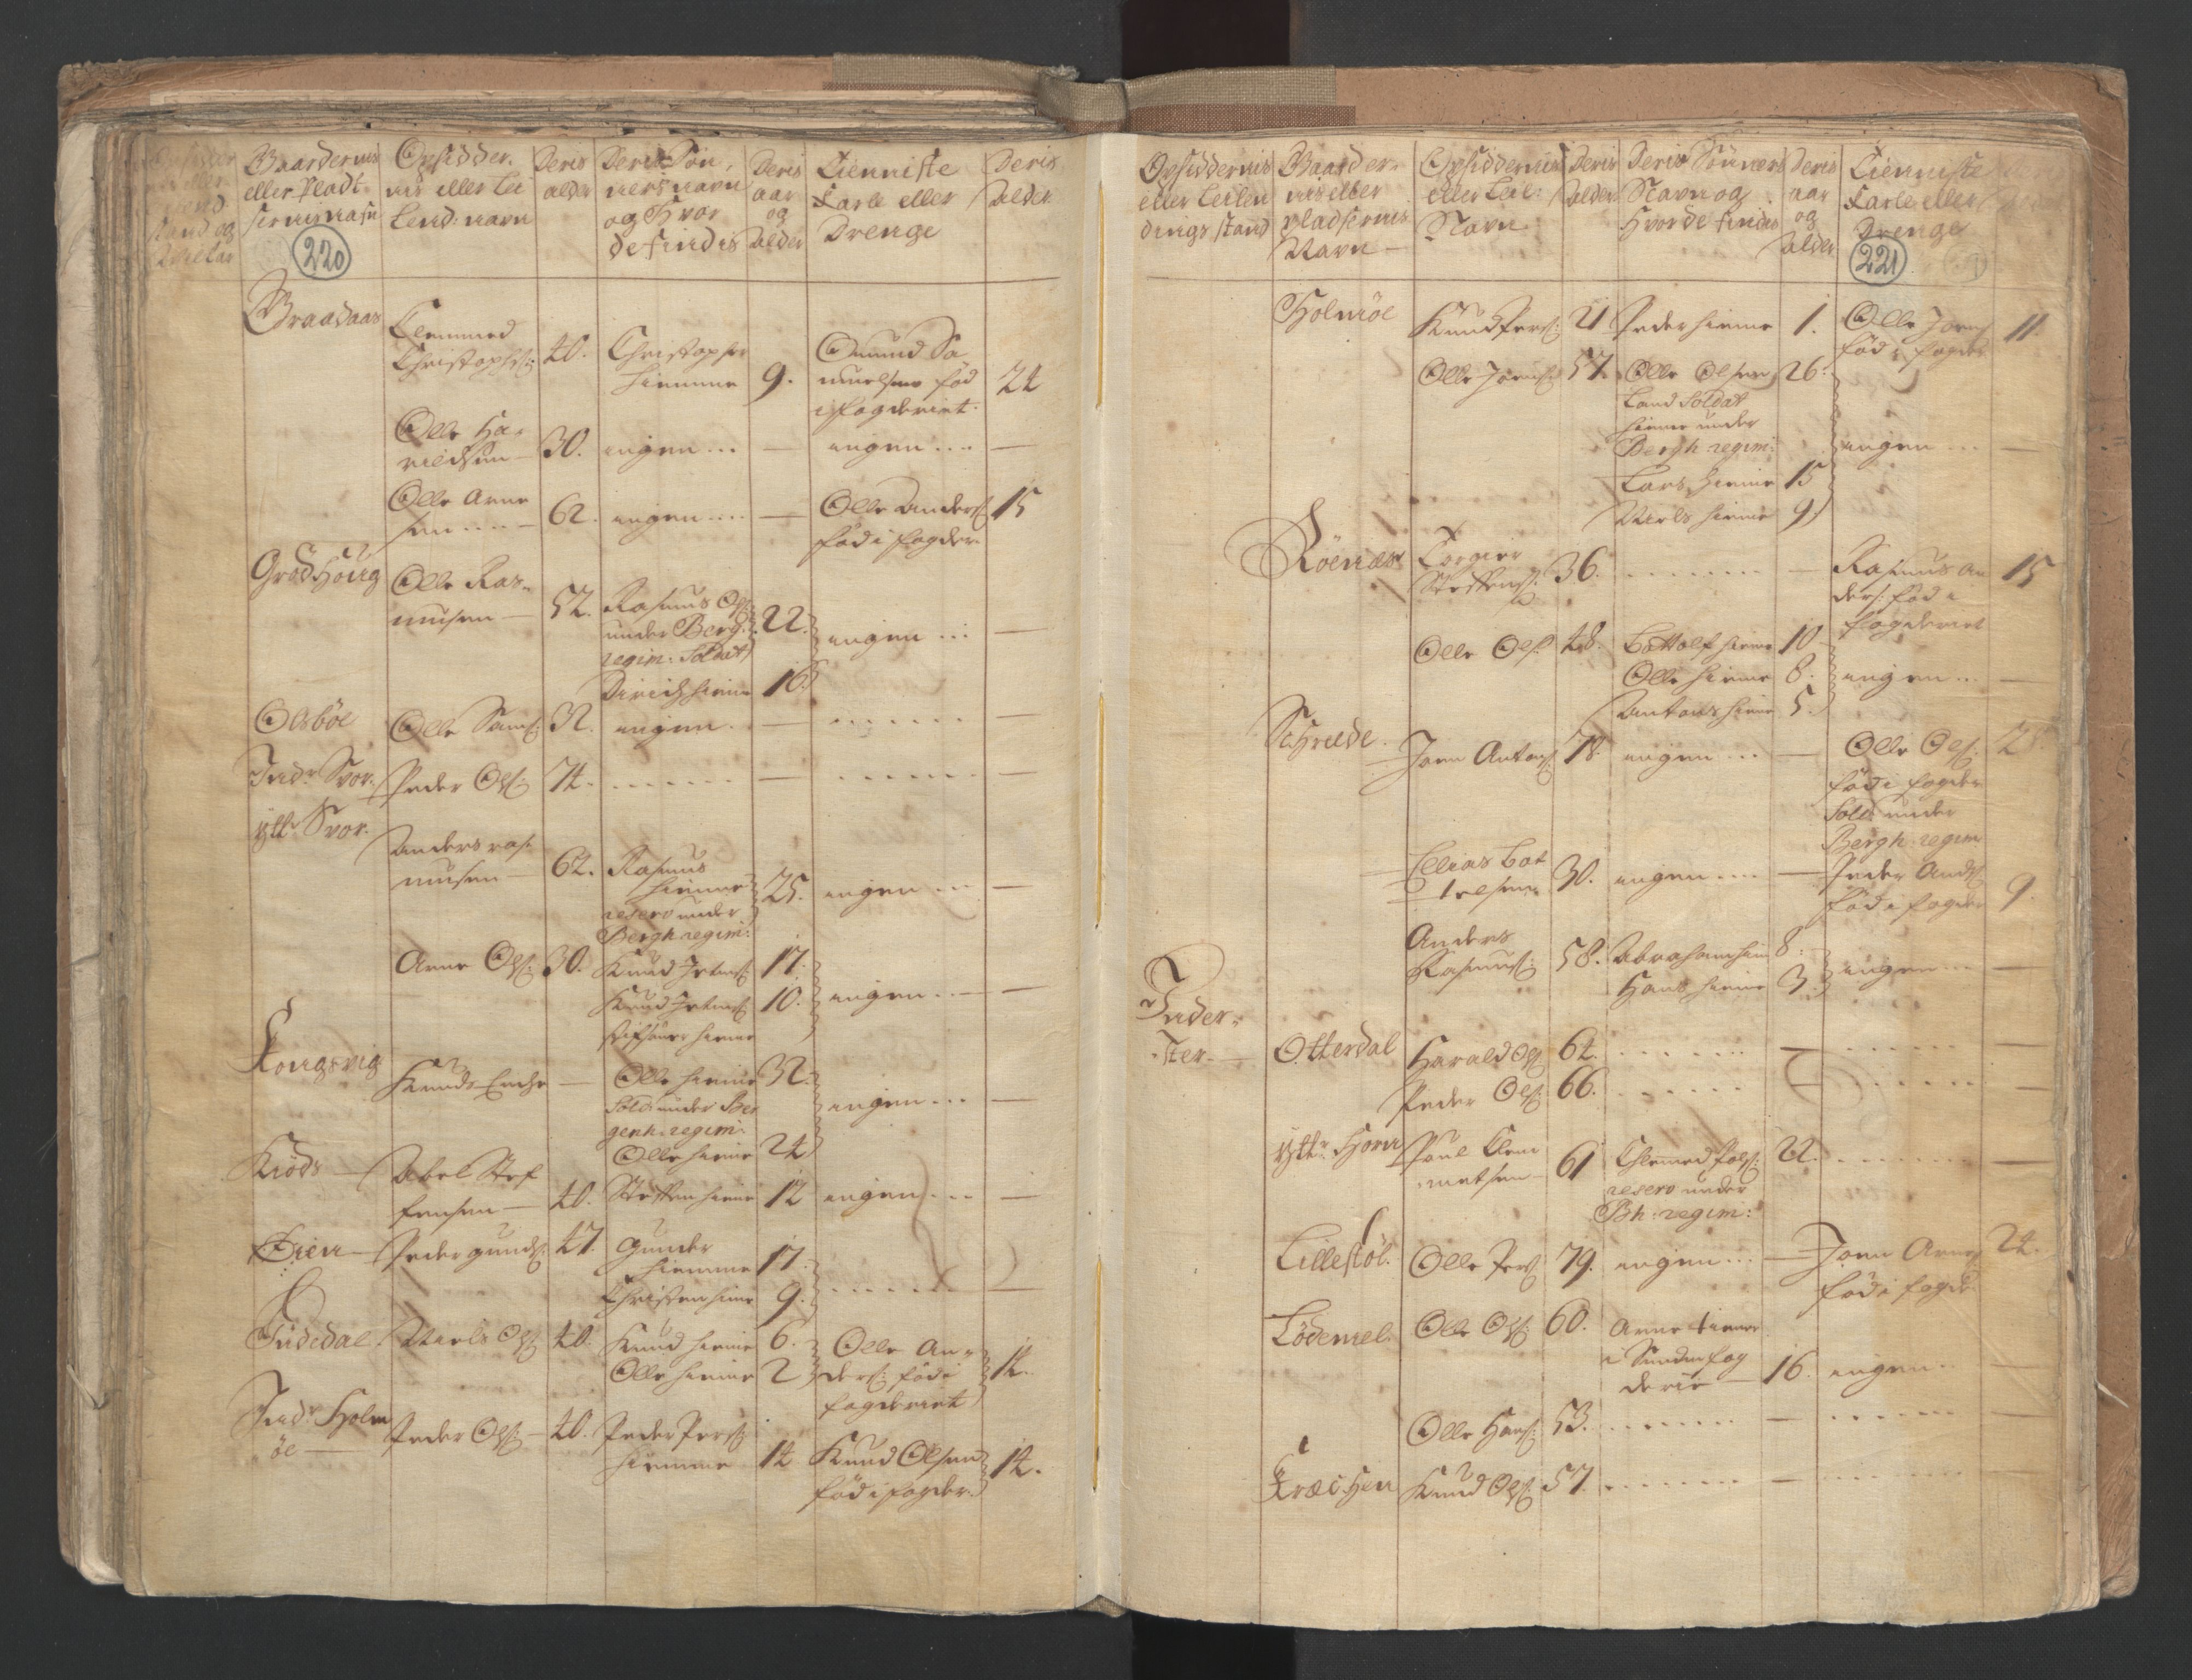 RA, Census (manntall) 1701, no. 9: Sunnfjord fogderi, Nordfjord fogderi and Svanø birk, 1701, p. 220-221